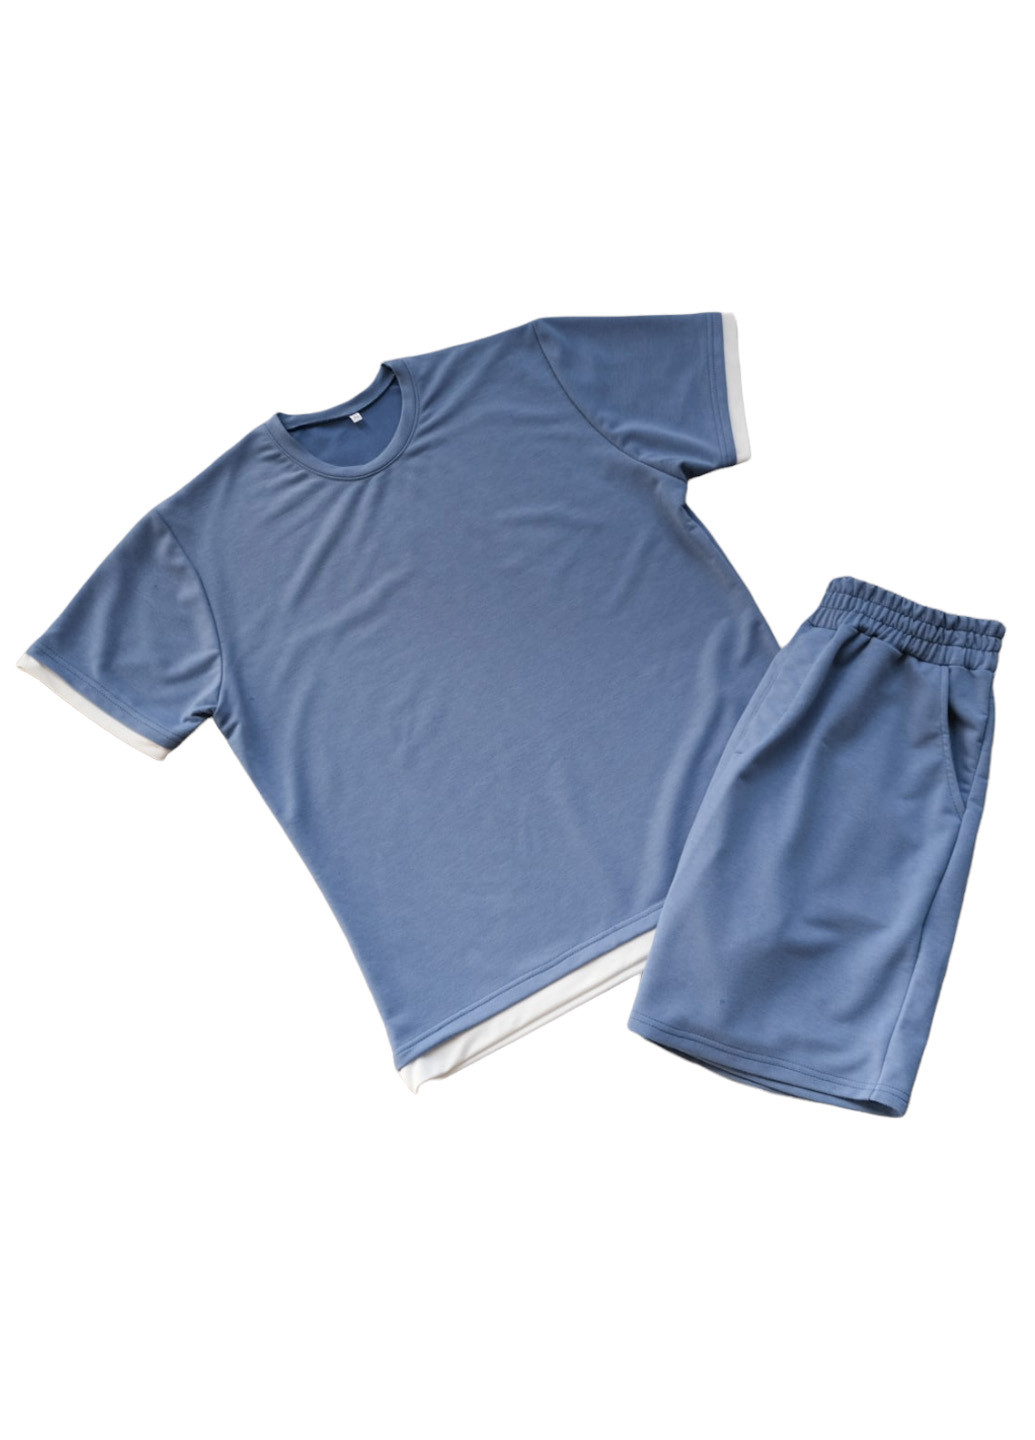 Голубой базовый костюм (футболка и шорты) ShopnGo